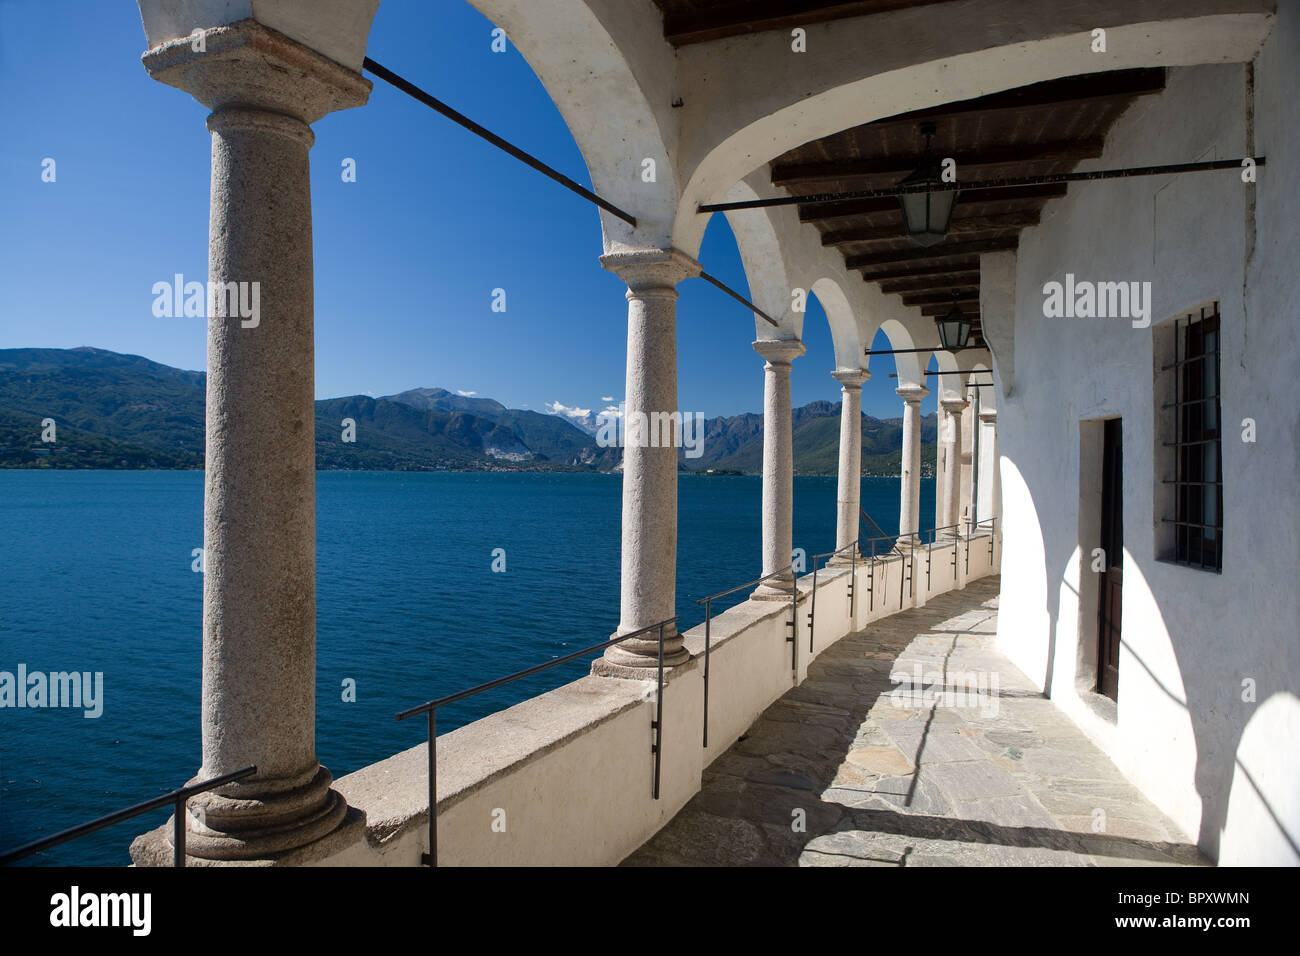 Lake Maggiore; Santa Caterina del Sasso; Lombardia; Italy Stock Photo